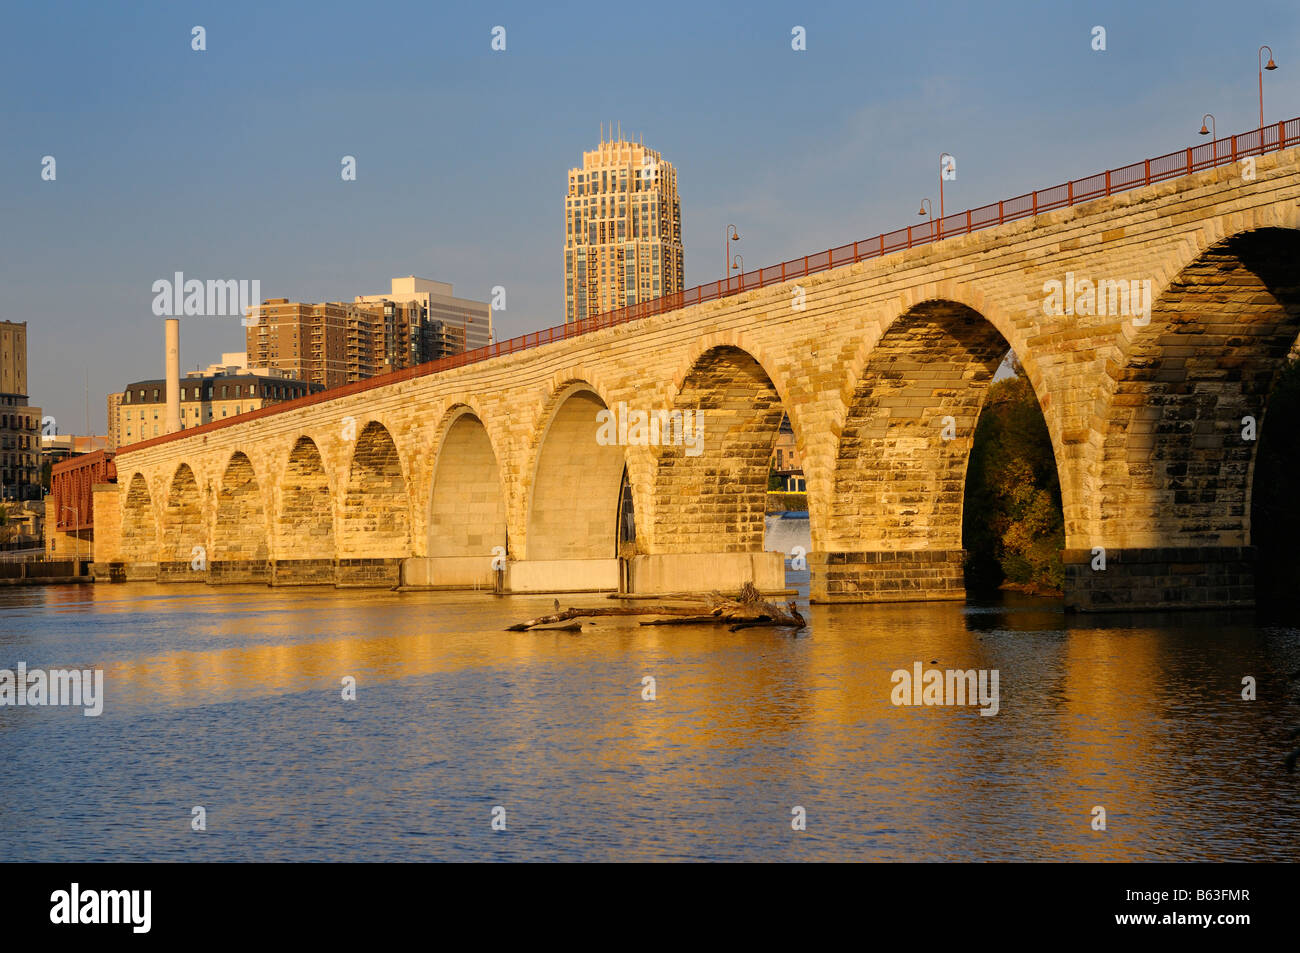 La pietra il ponte di arco riflesso in il bagliore dorato del tramonto sul fiume Mississippi in Minneapolis Minnesota Foto Stock